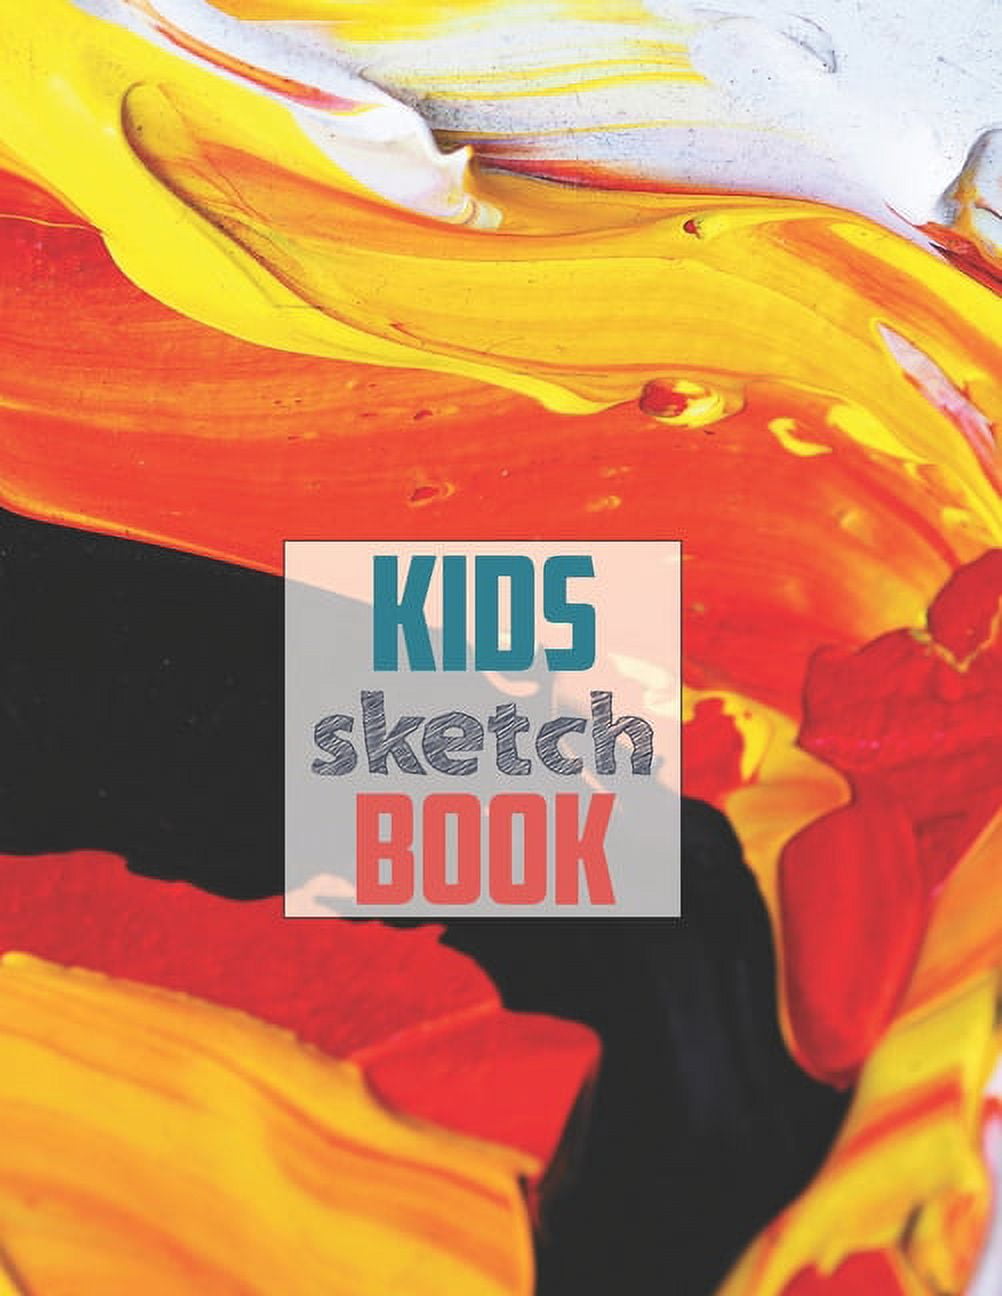 Sketchbook for kids: Children Sketch Book for Drawing Practice